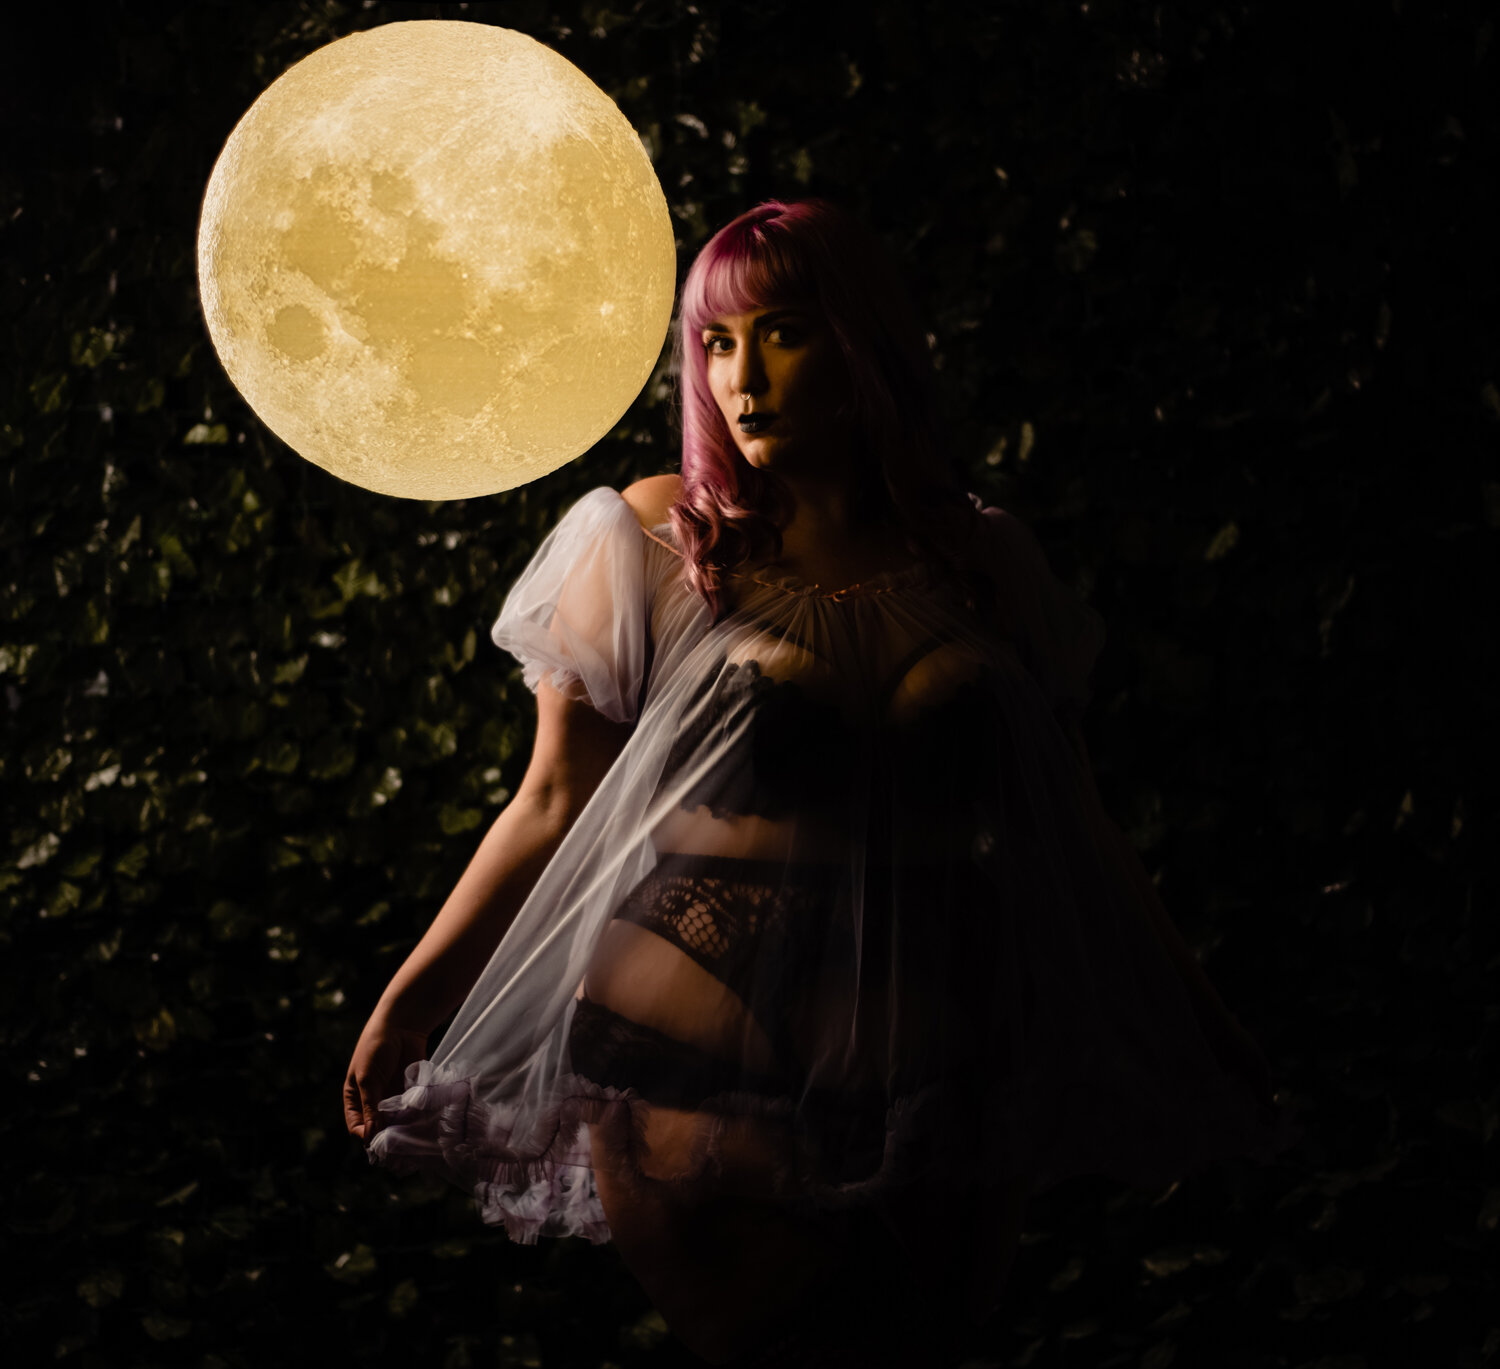 Moon Lamp Portraits by La Photographie Nashville 07.jpg